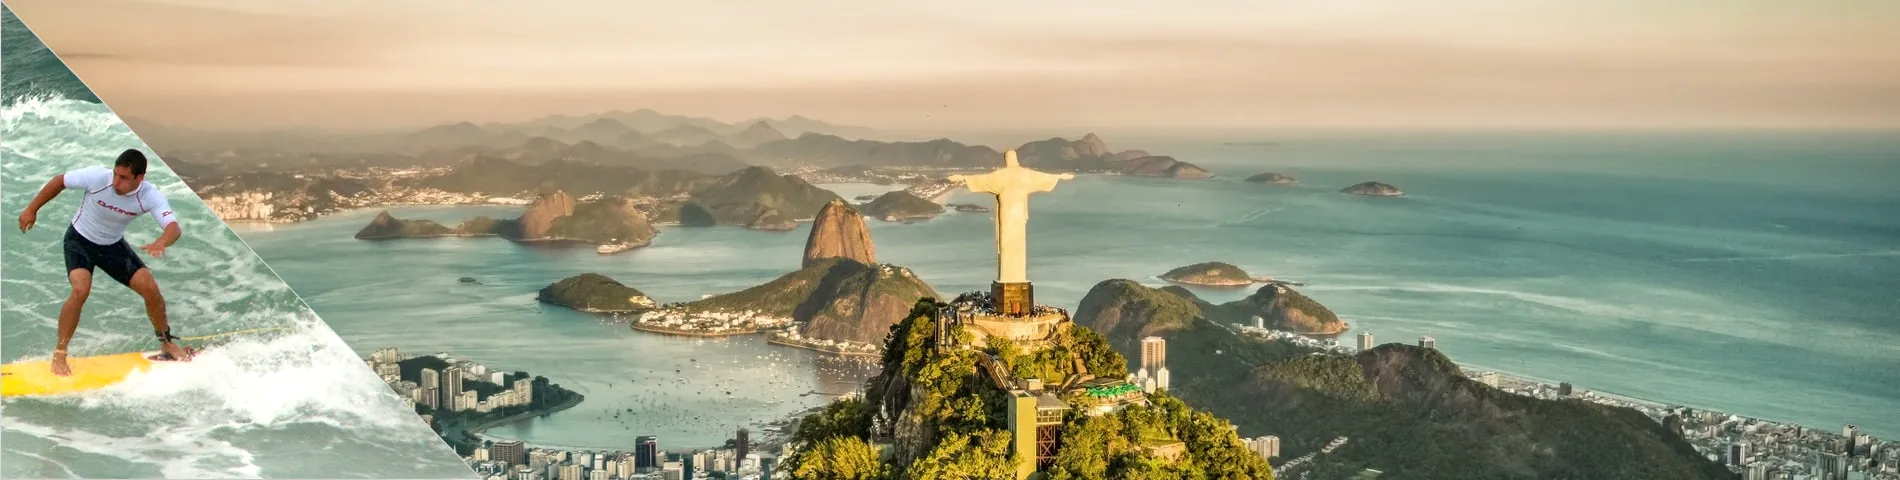 Ріо-де-Жанейро - португальська та серфінг